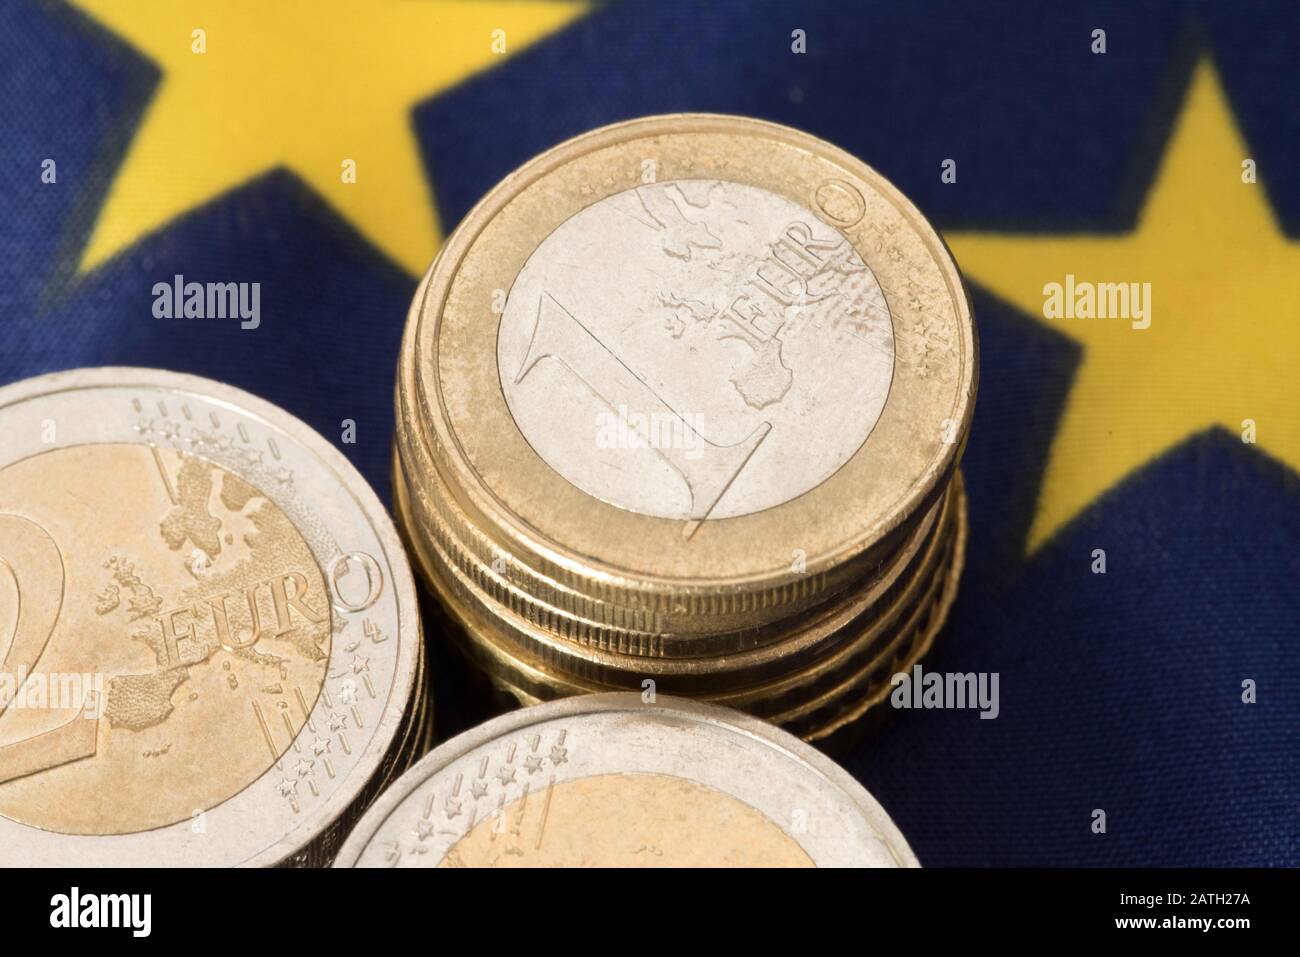 Euro coins and European Union flag Stock Photo